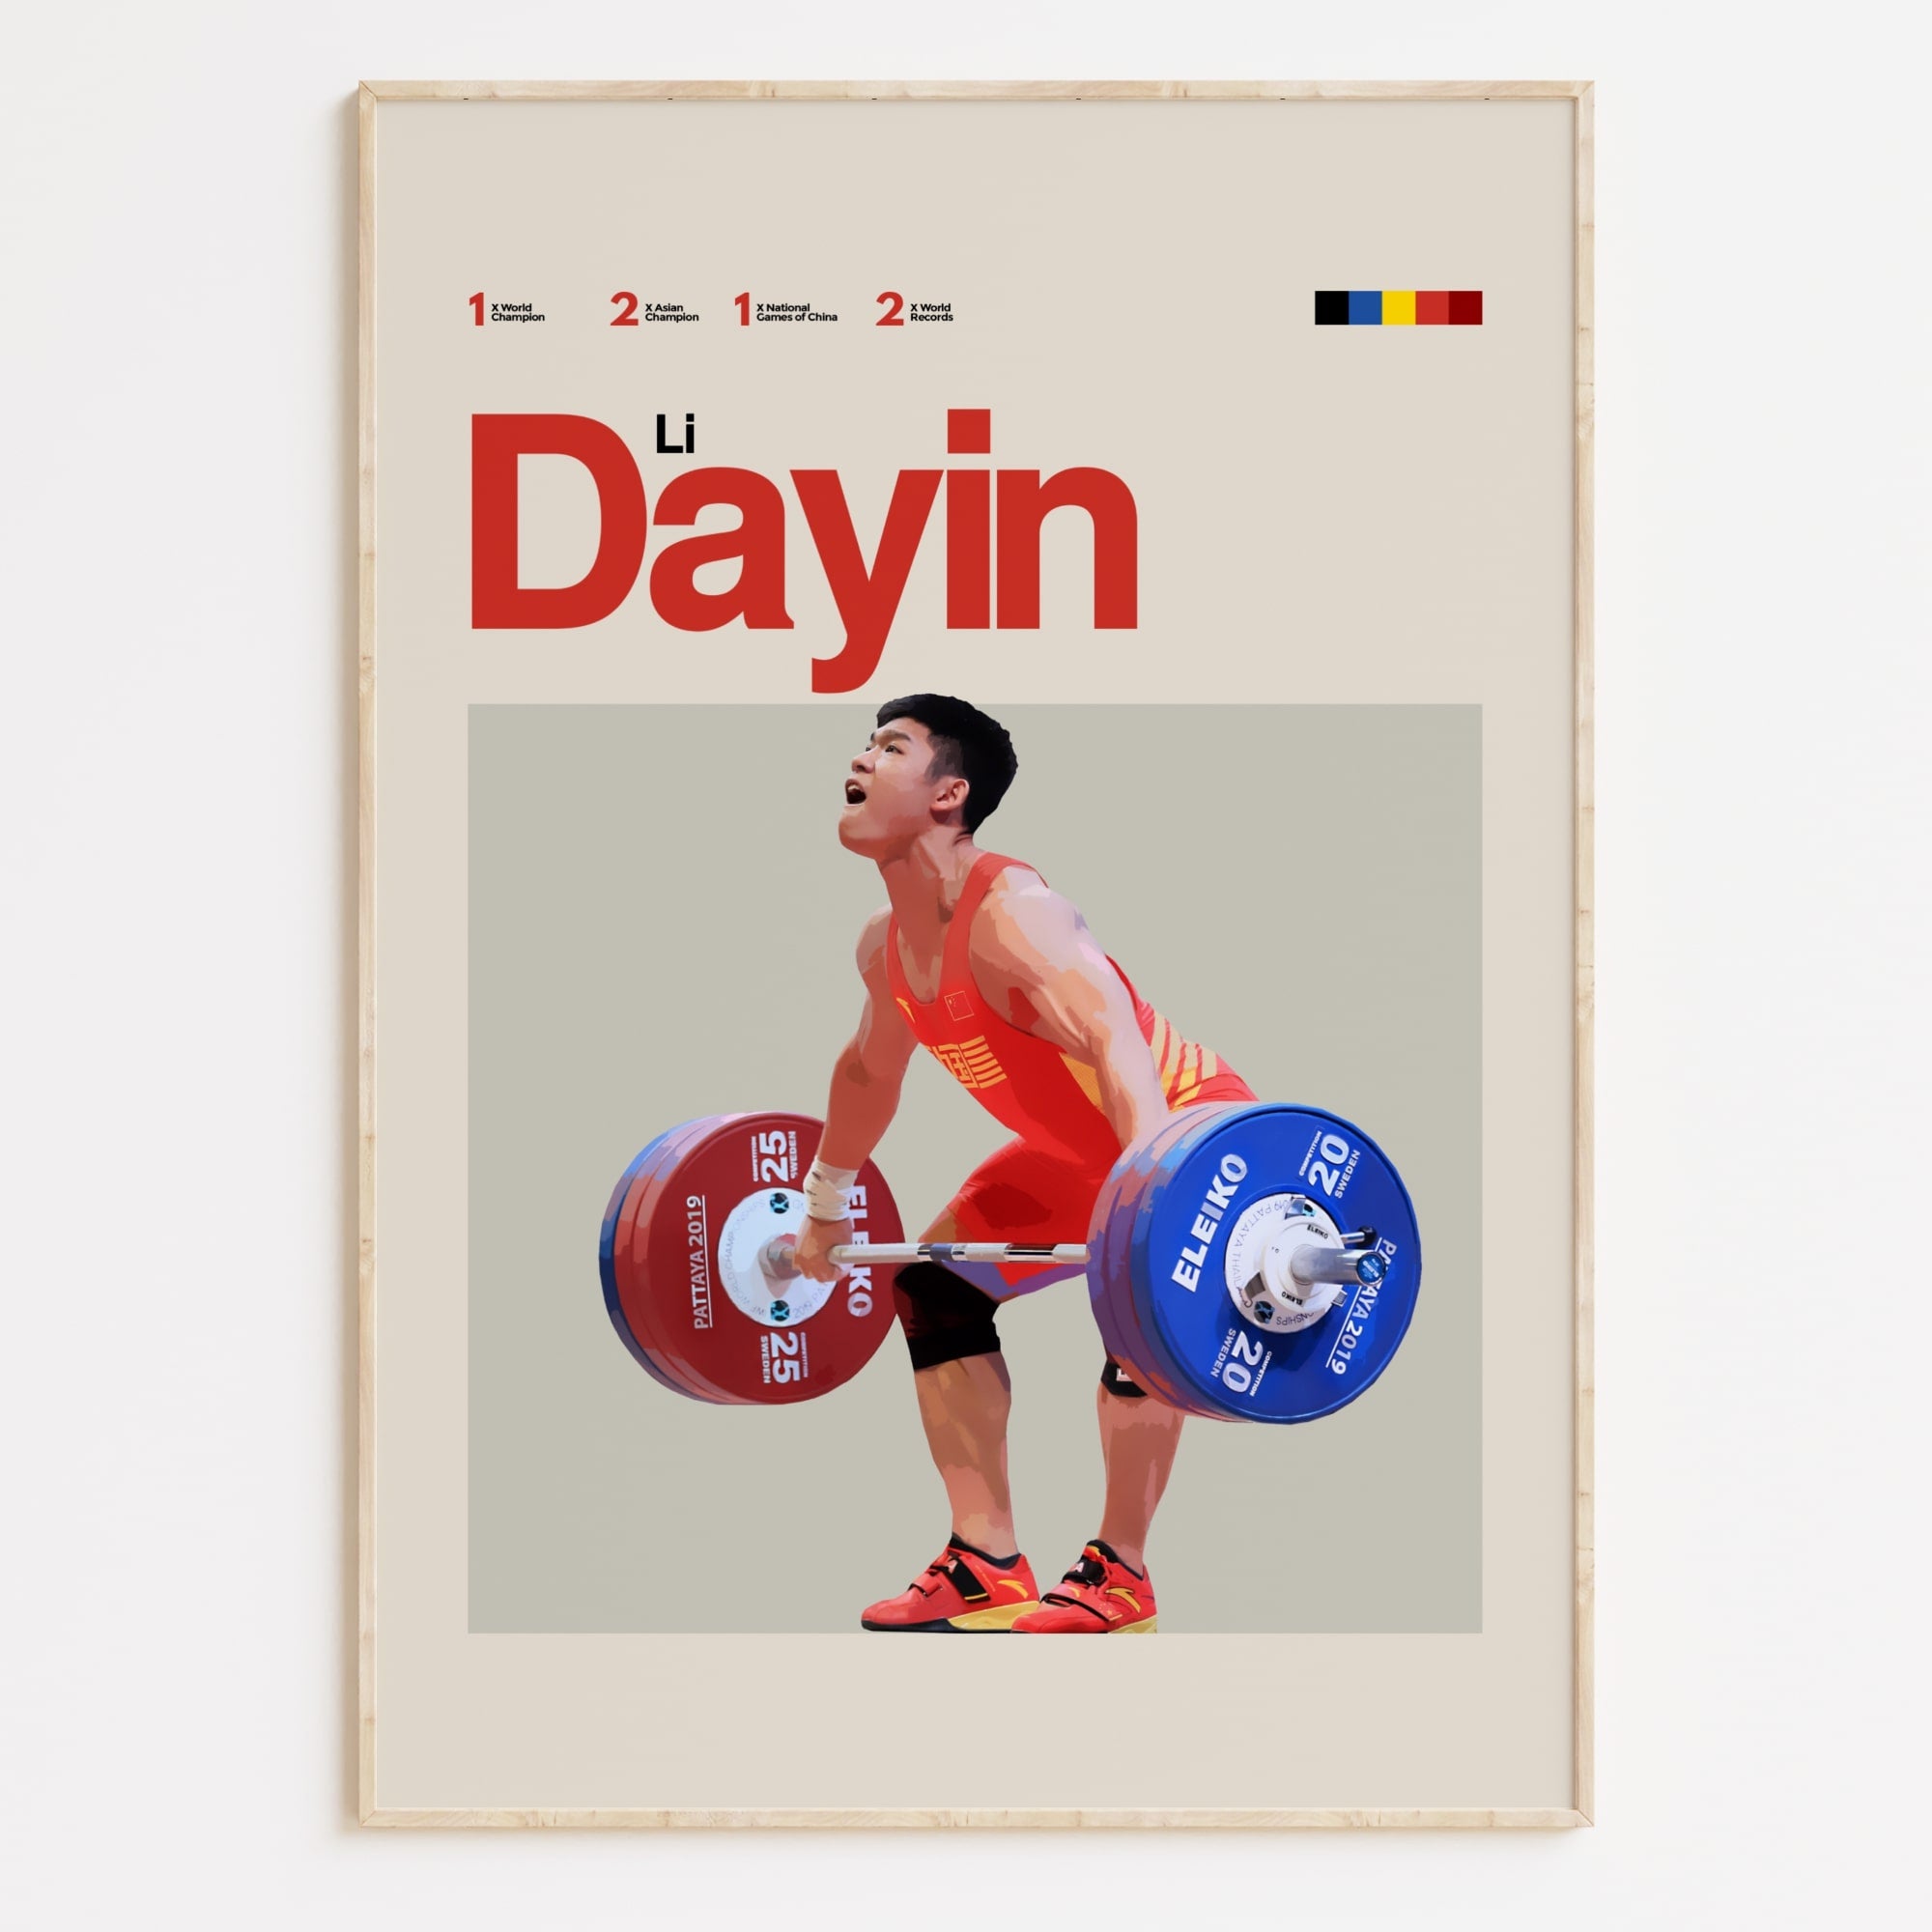 Li Dayin Poster